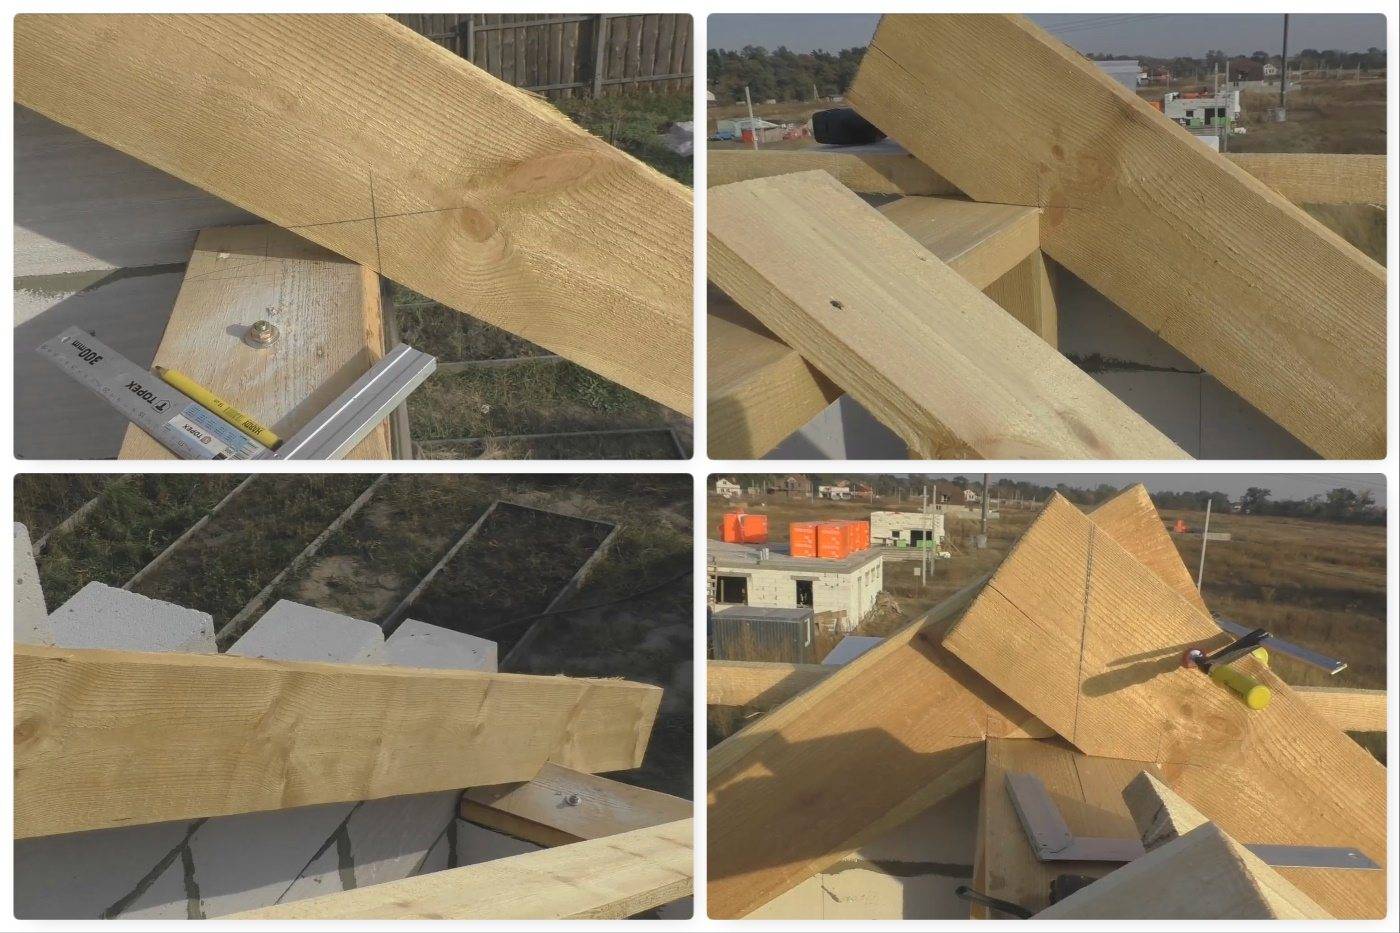 Мауэрлат для двухскатной крыши - варианты устройства, инструкция